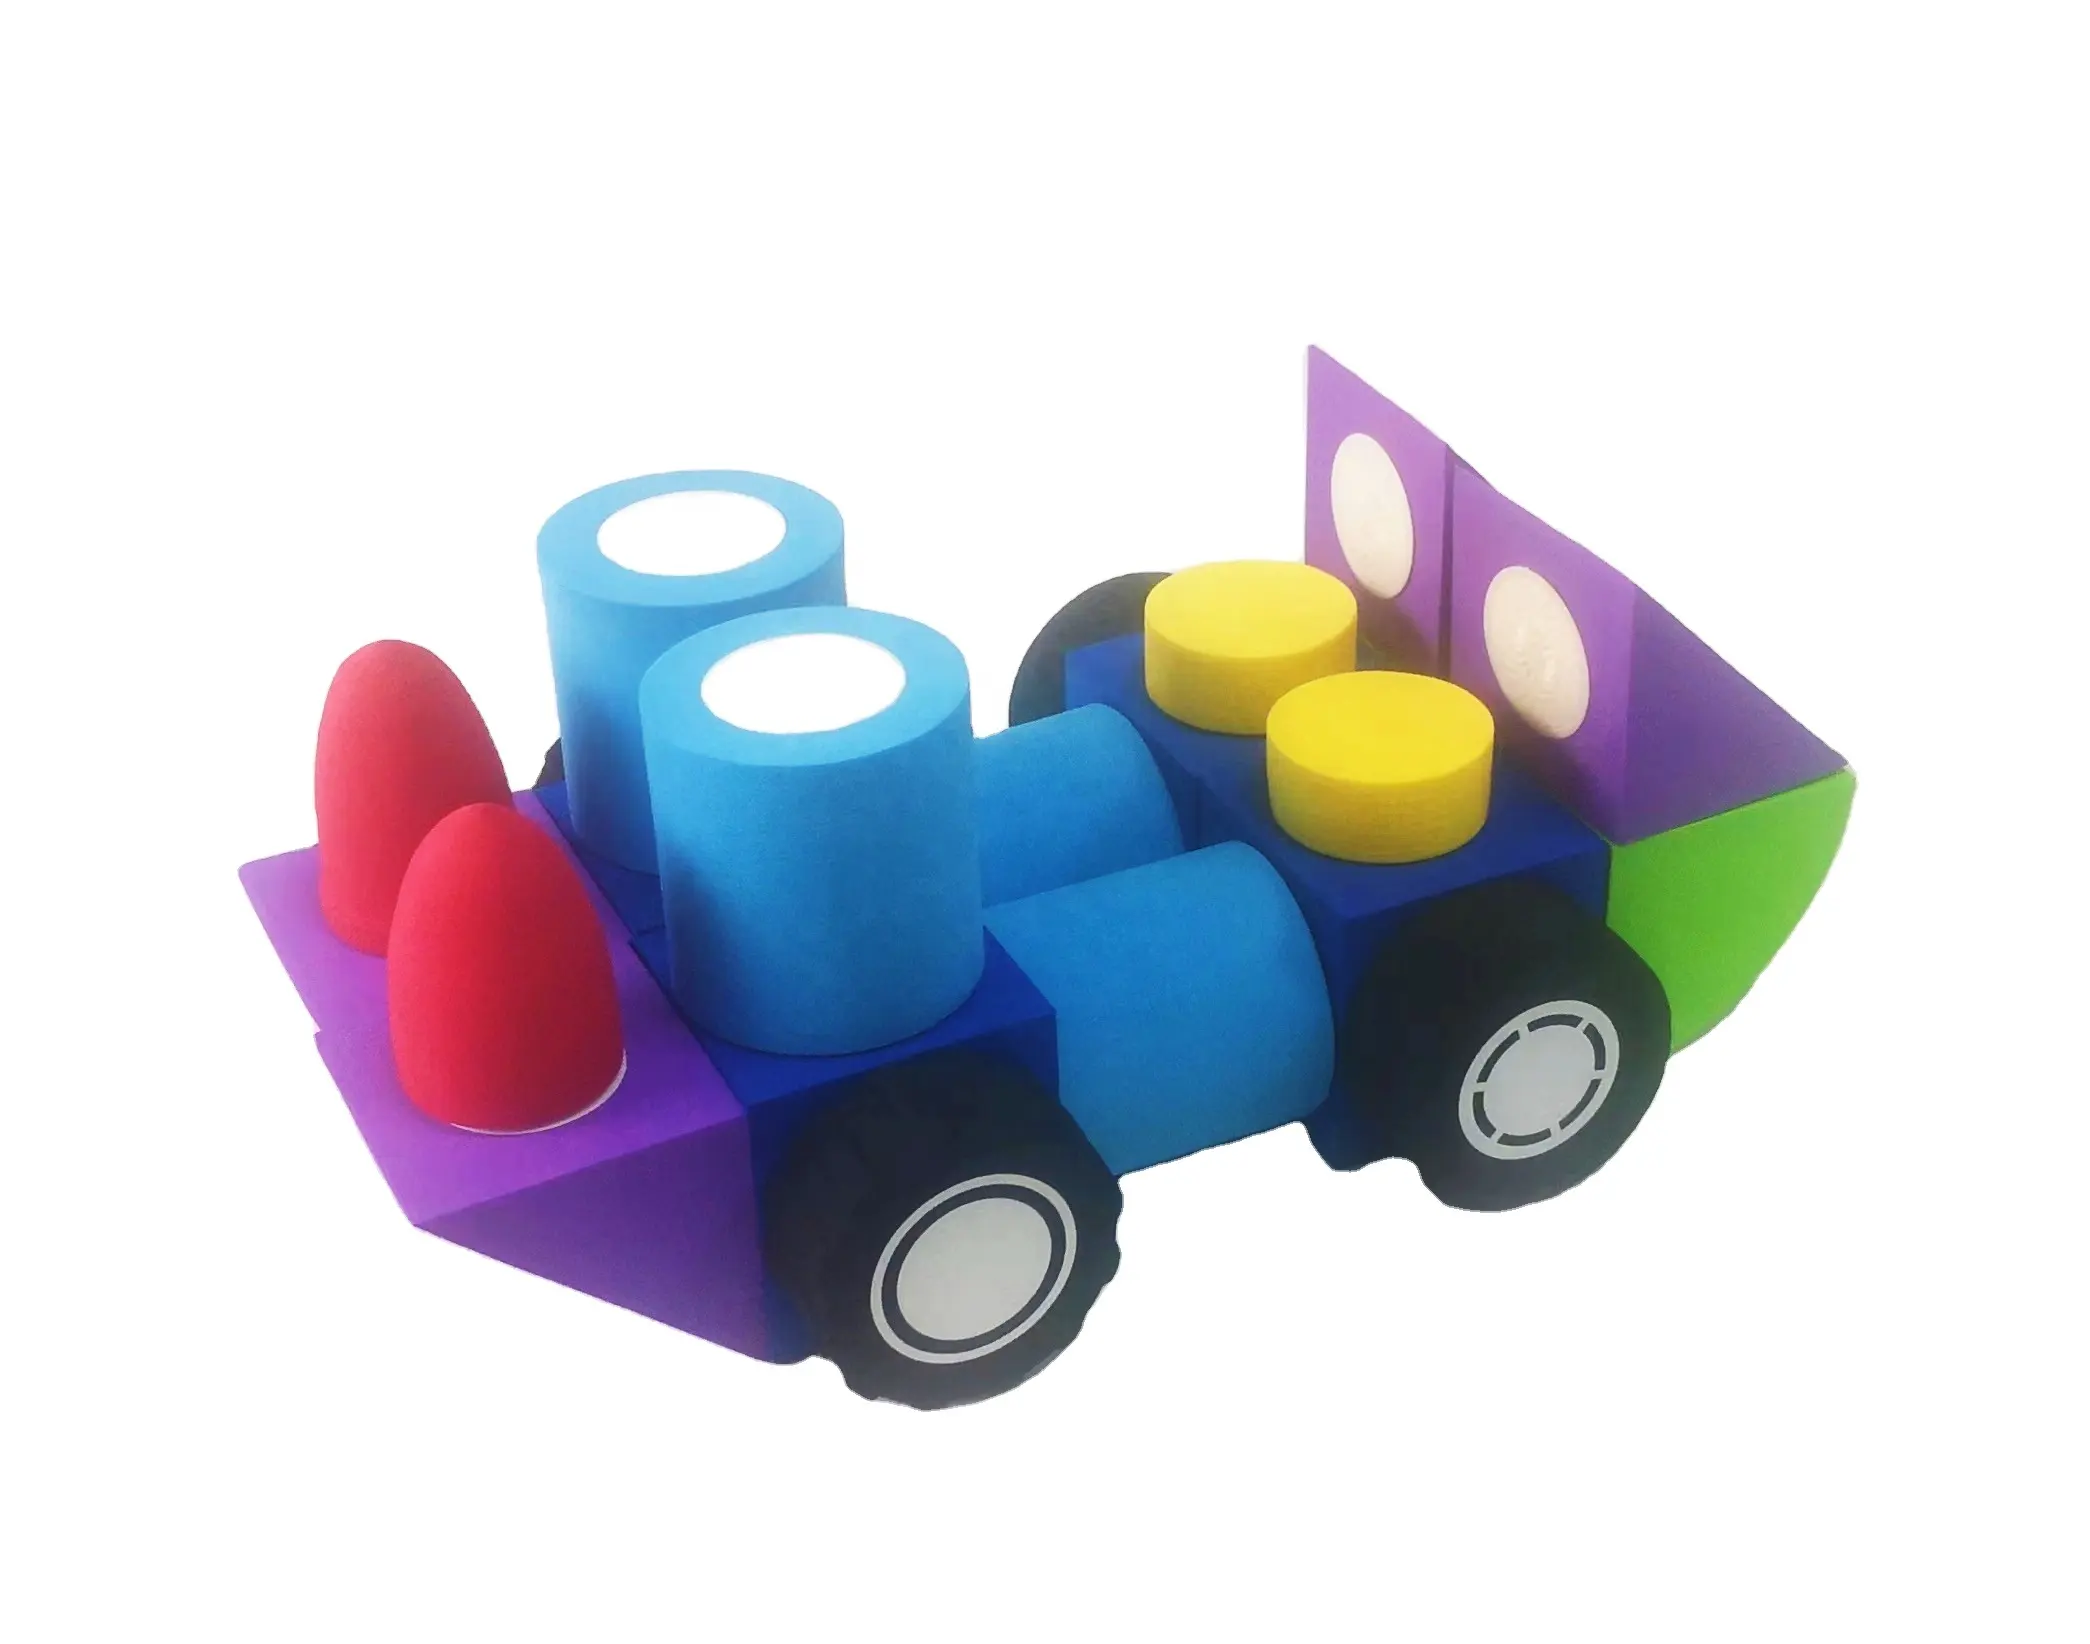 Magnetische Eva-Bouwstenen Voor Kinderspeelgoed Voor Peuters Voorschoolse Stamonderwijs Sensorisch Speelgoed Voor De Leeftijd Van 9M. Totaal 17 Verschillende De